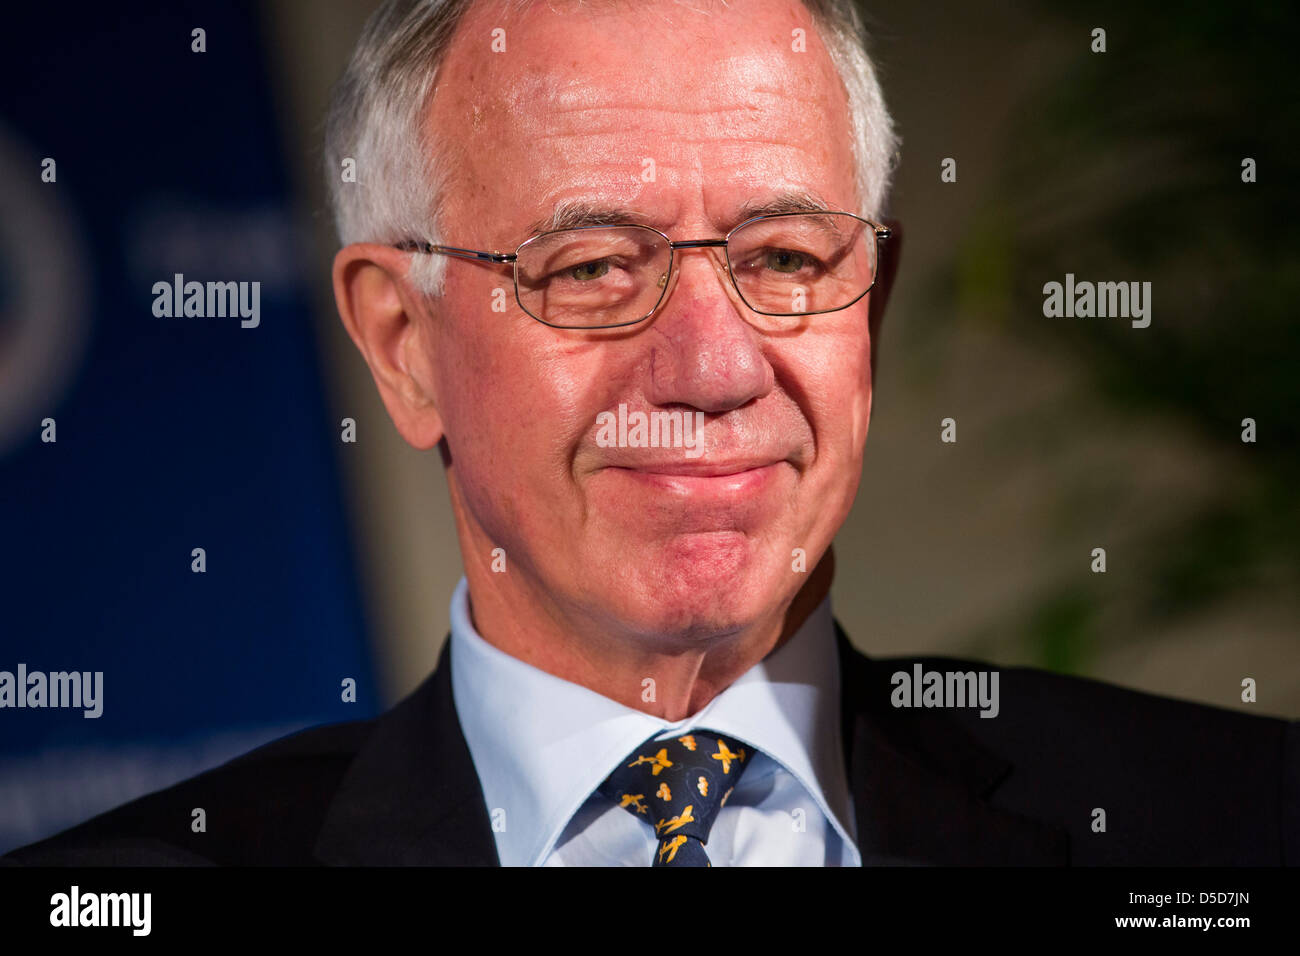 Dr. Jürgen Weber, Vorsitzender des Aufsichtsrats Deutsche Lufthansa. Stockfoto